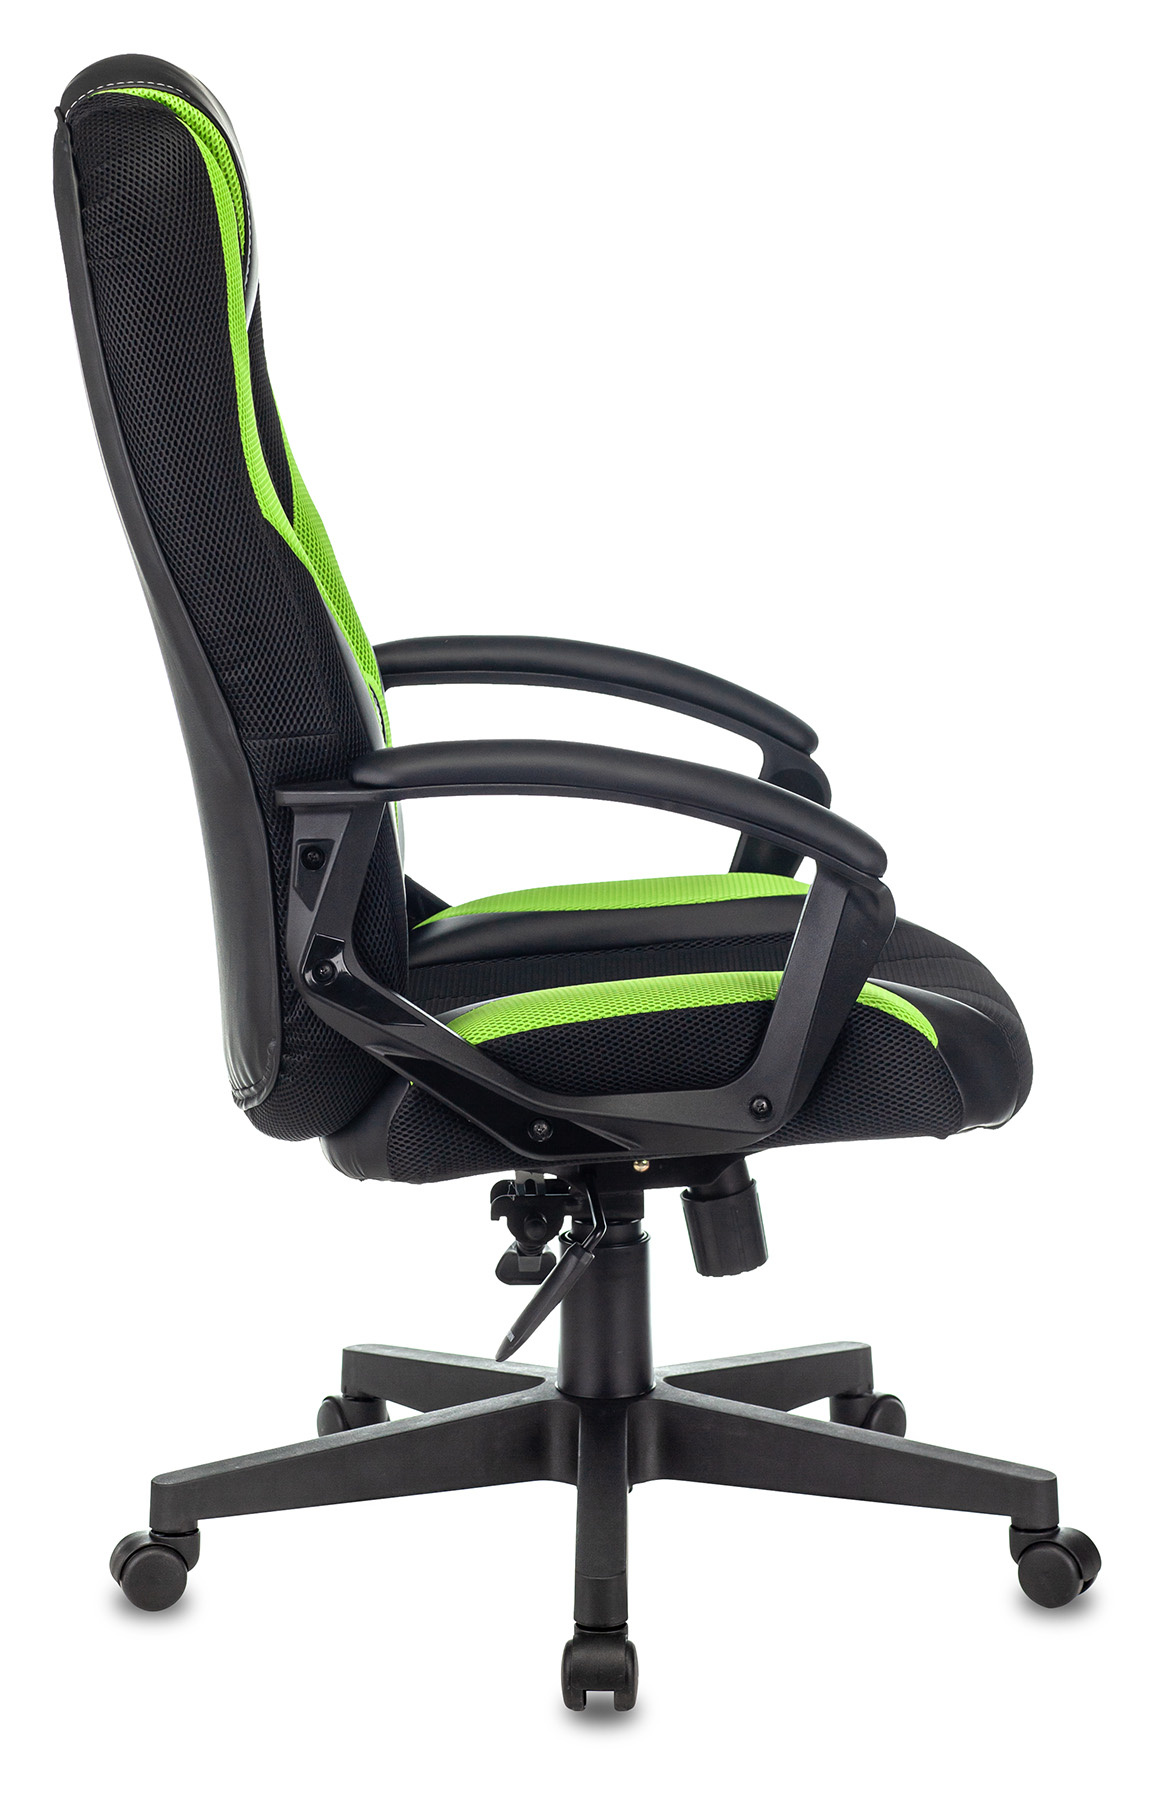 Кресло игровое Zombie 9, обивка: ткань/экокожа, цвет: черный/салатовый (ZOMBIE 9 GREEN) от магазина Buro.store